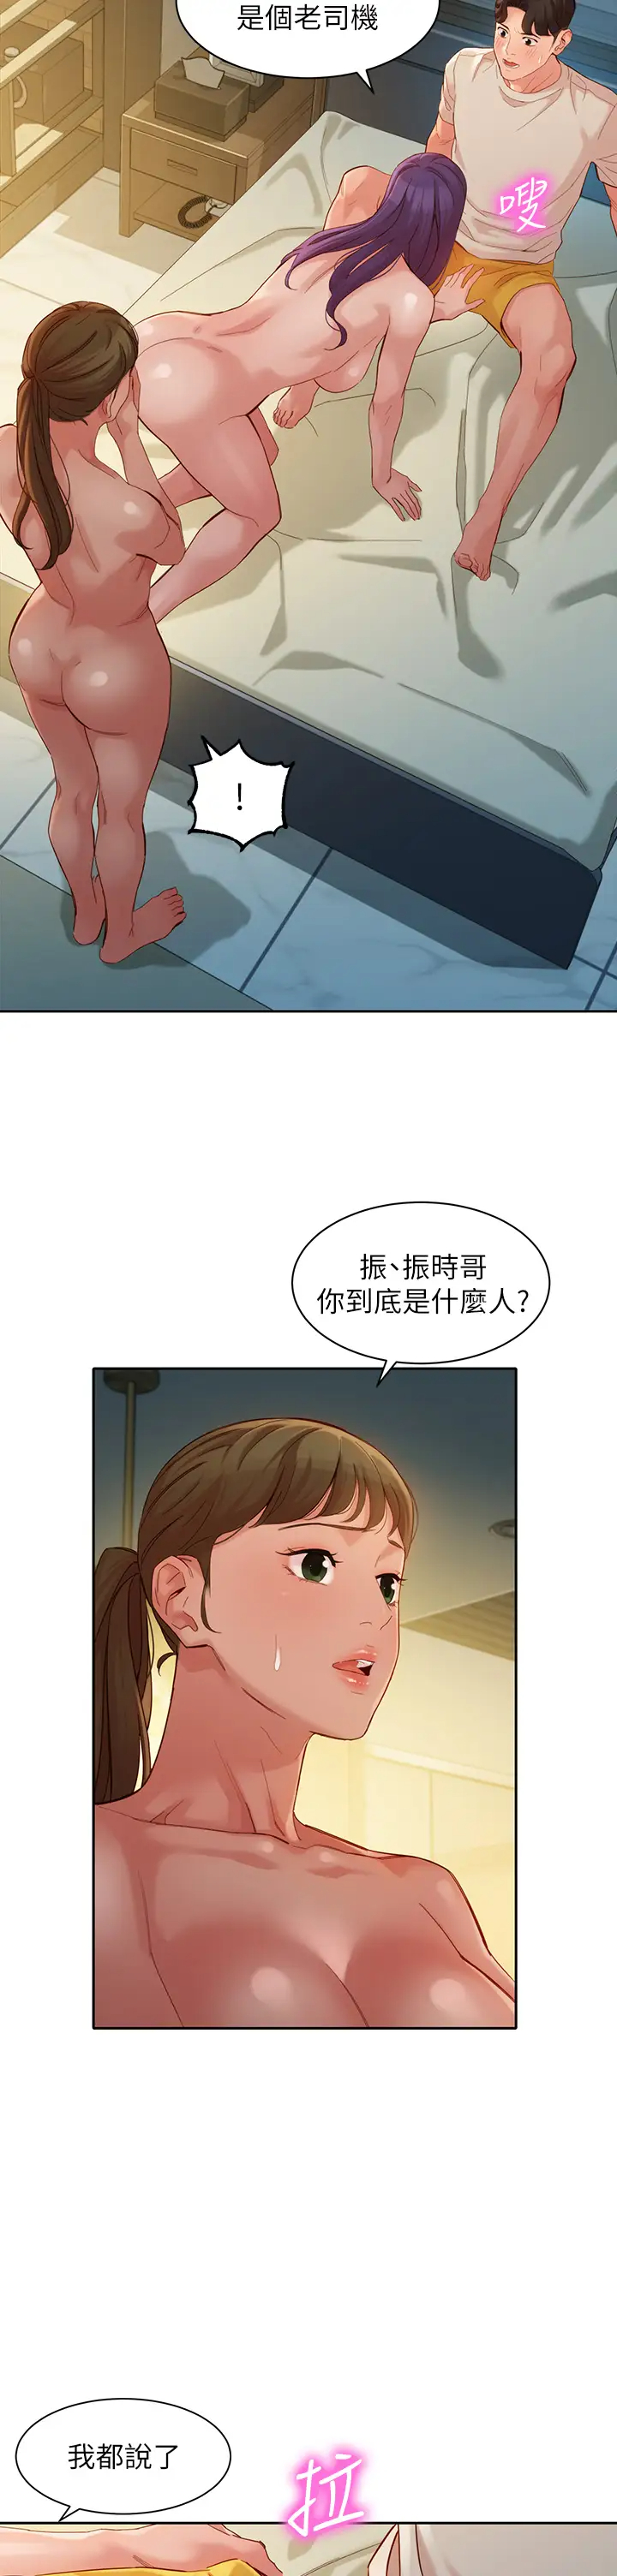 韩国污漫画 女神寫真 第51话3P极致飨宴 15